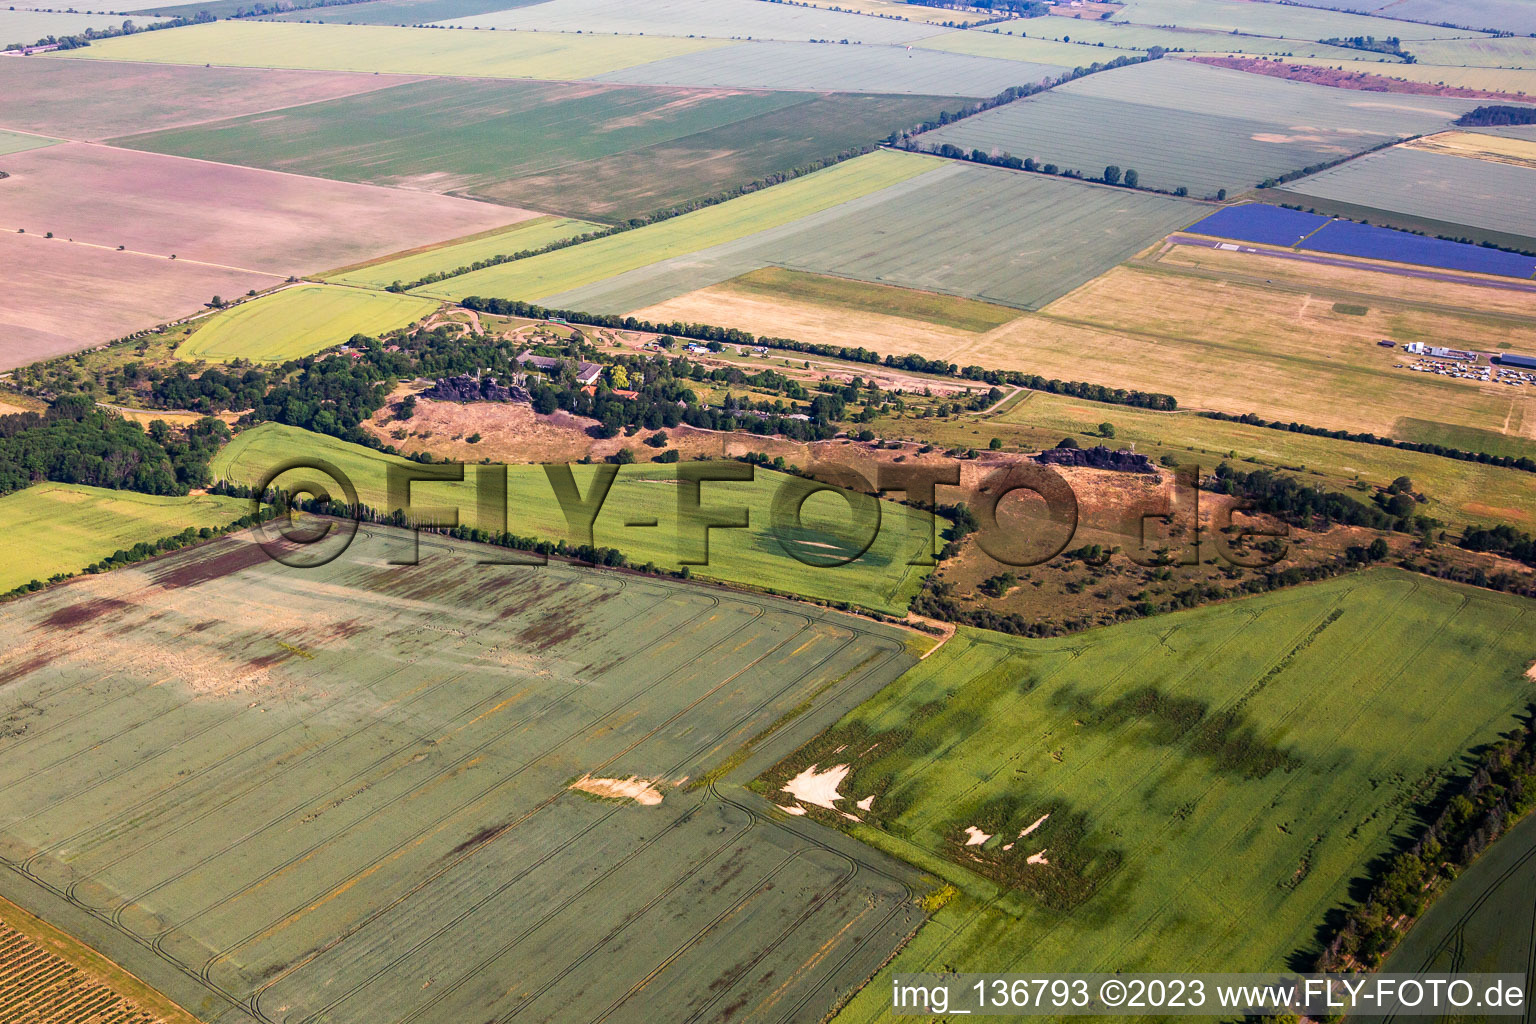 Vue aérienne de Grande et petite contre-pierre à Ballenstedt dans le département Saxe-Anhalt, Allemagne